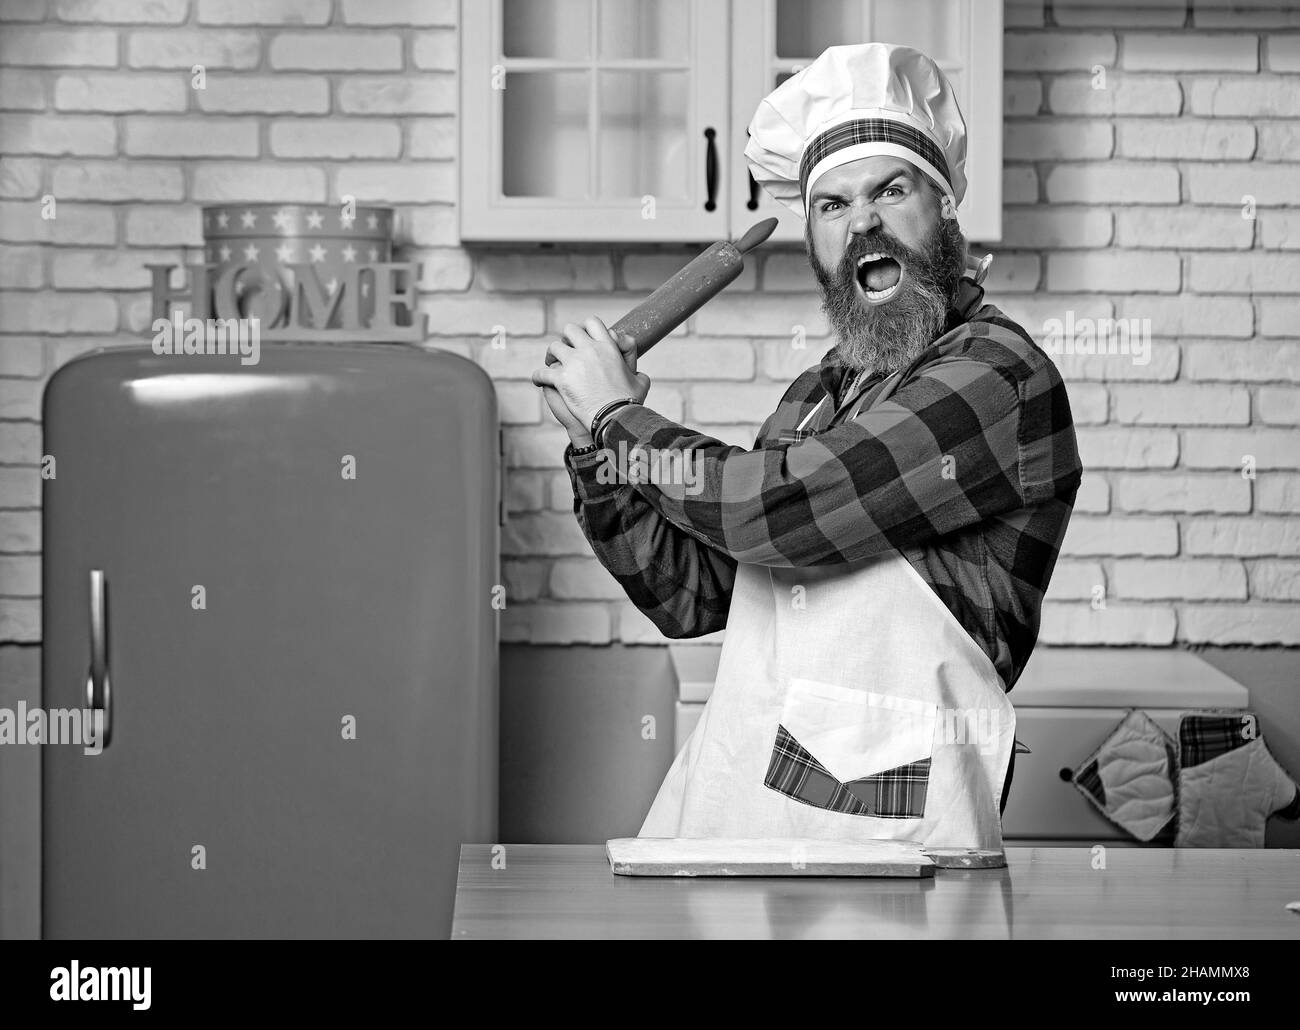 Junge bärtige Koch wütend oder hämmern auf jemanden in der Küche. Stockfoto